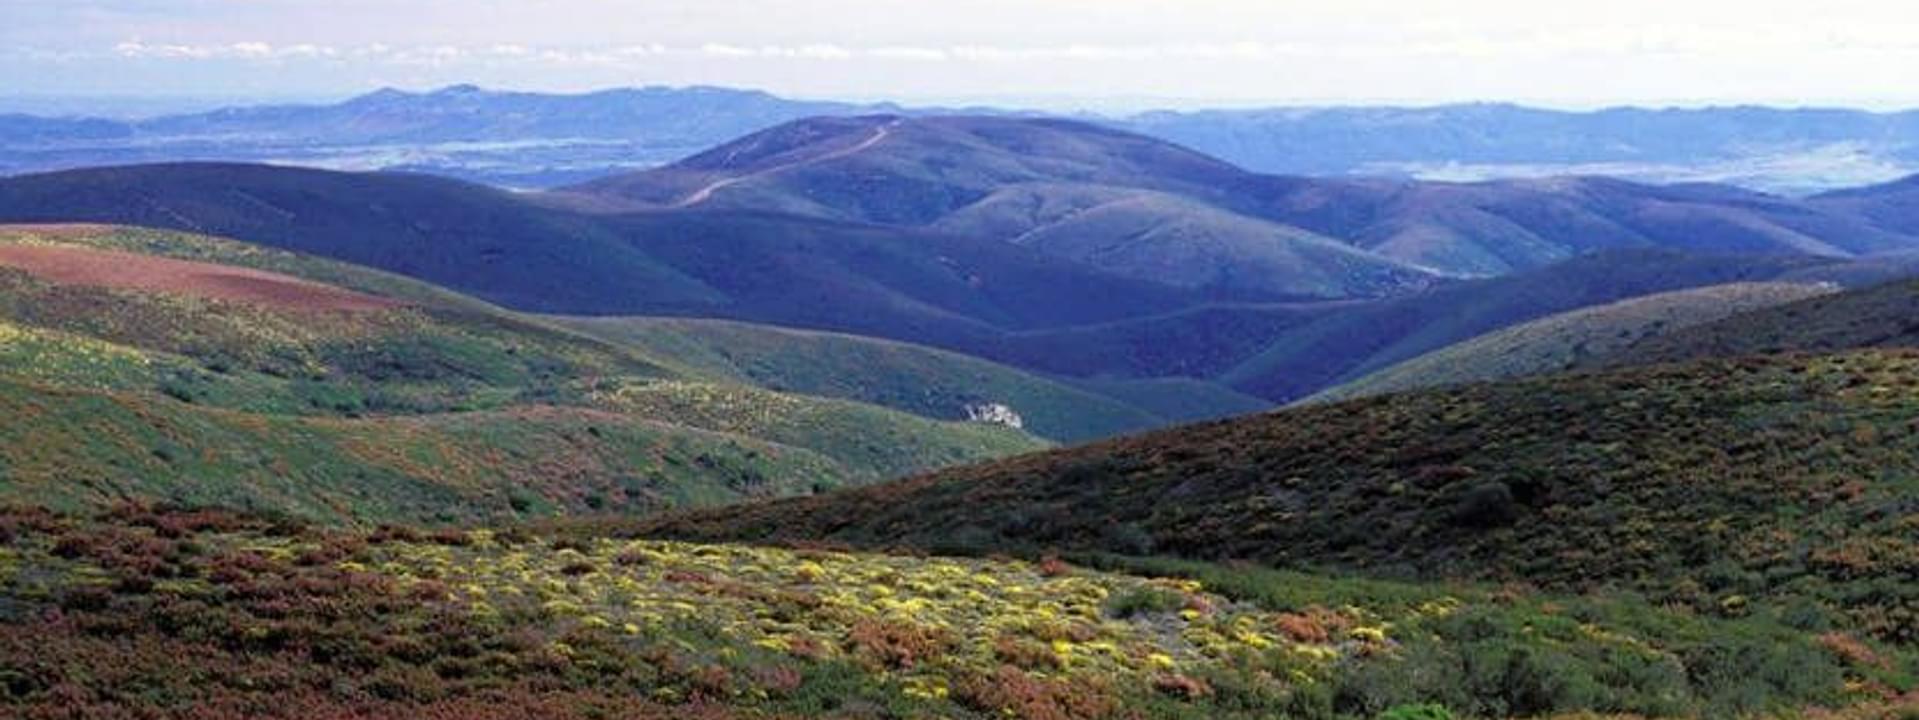 Reserva Natural de la Sierra da Malcata